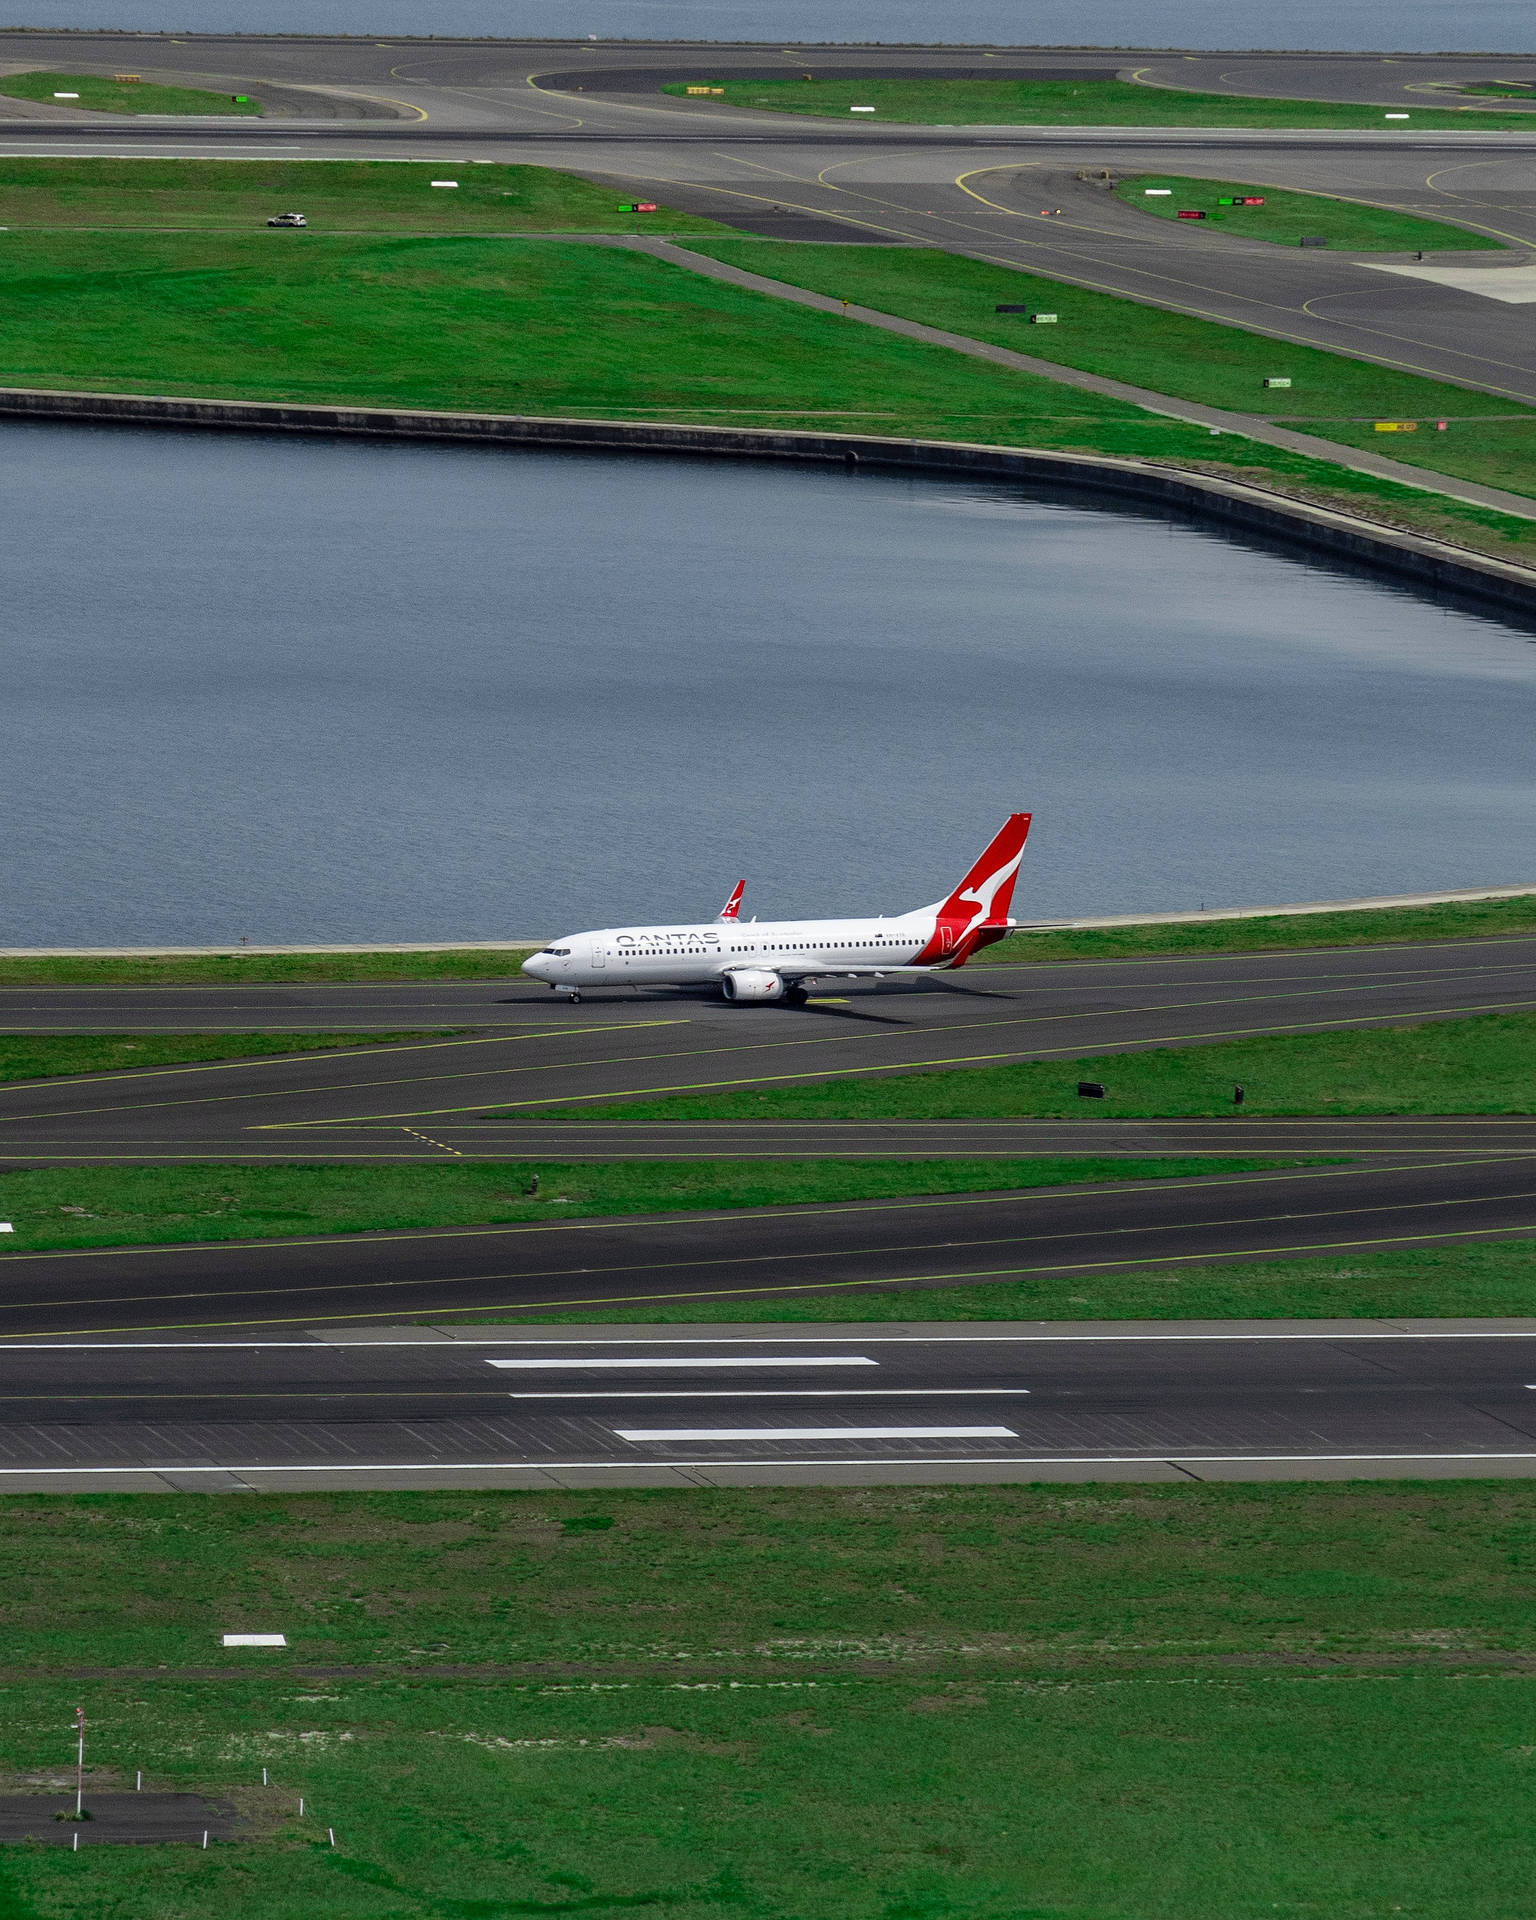 Qantas Aircraft On Runway Background